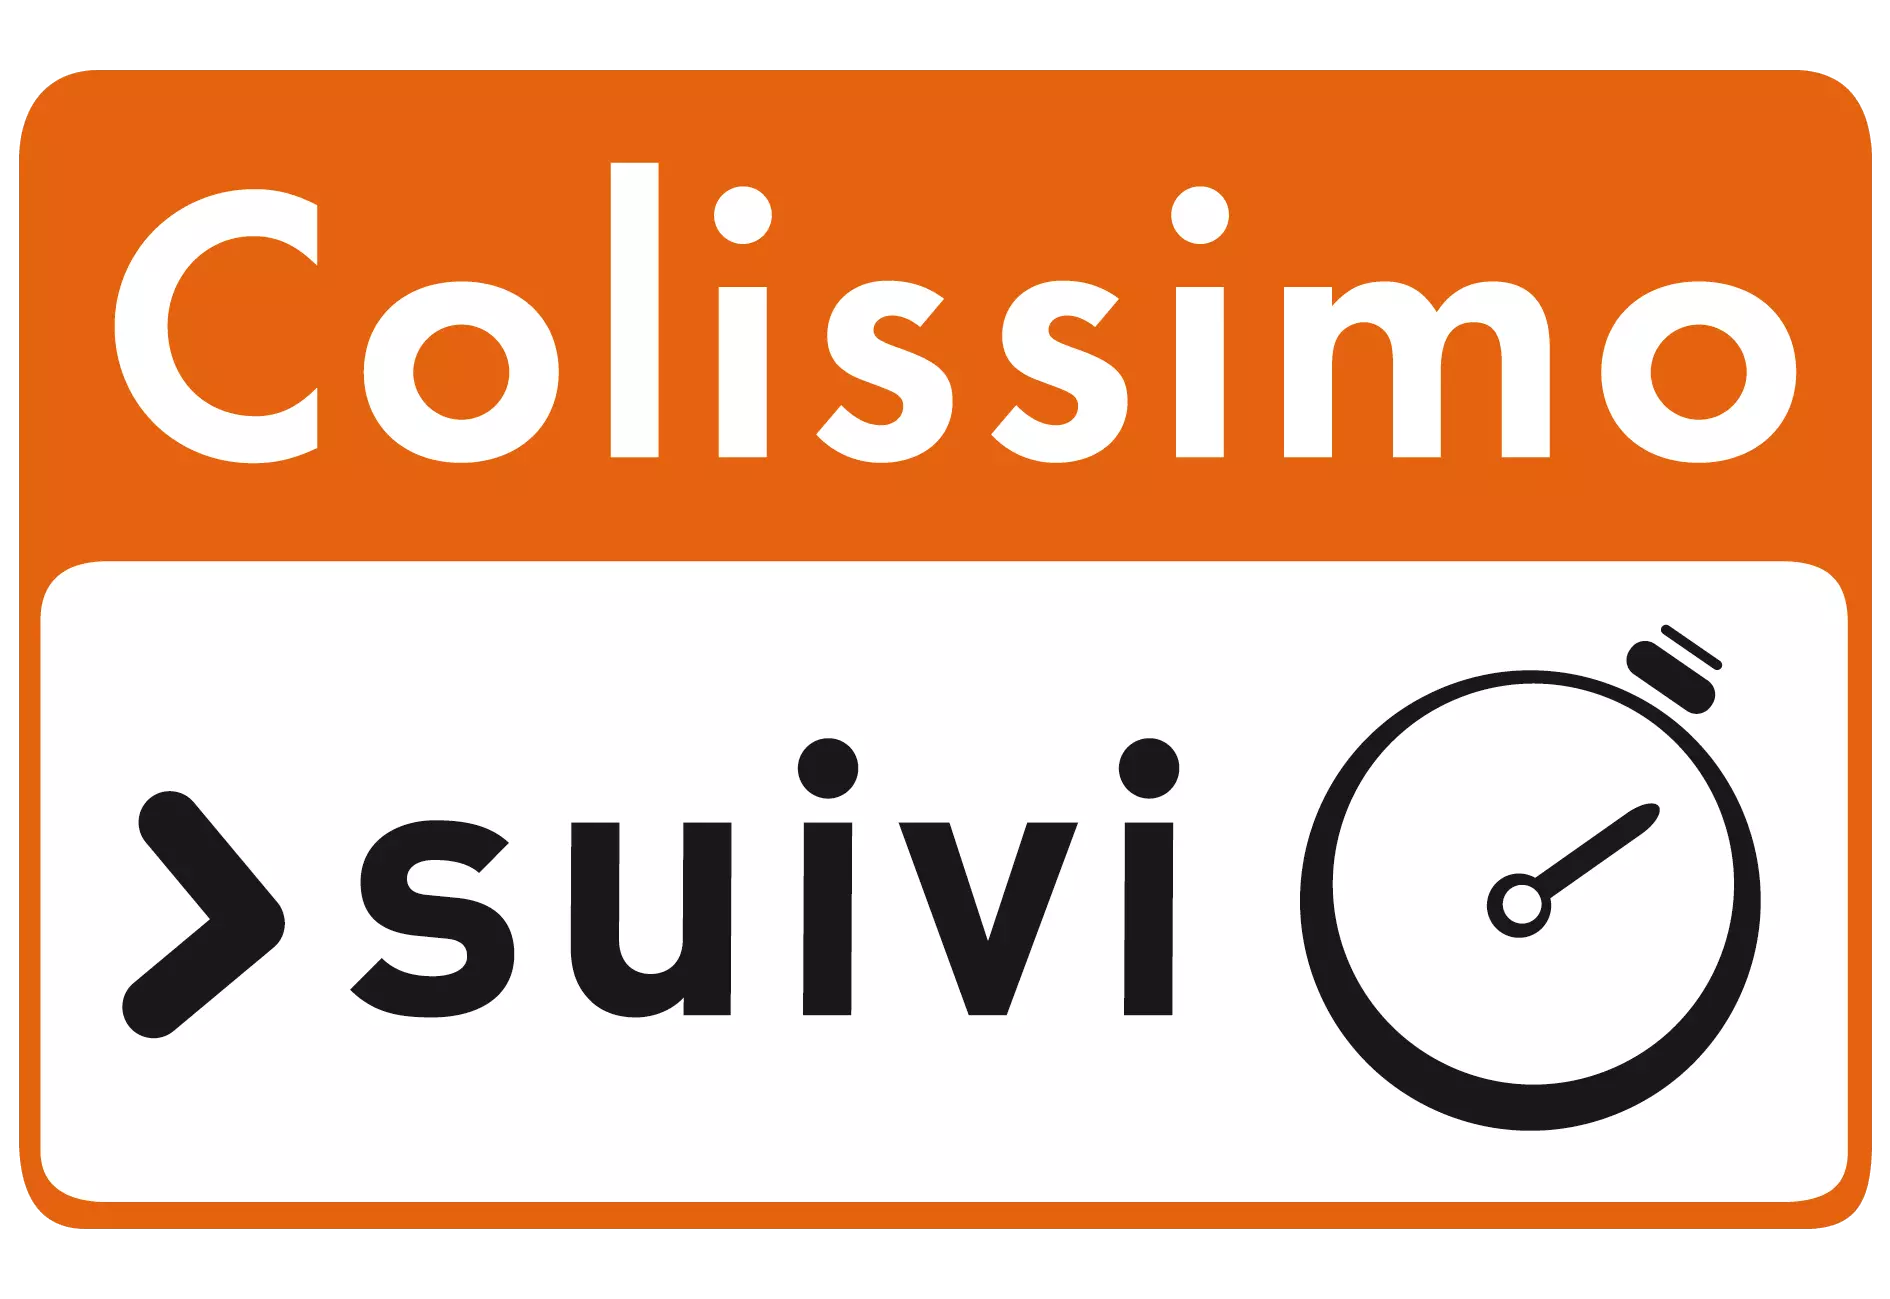 Colissimo suivi (participation port et emballage ) - La Malle Pour Tous